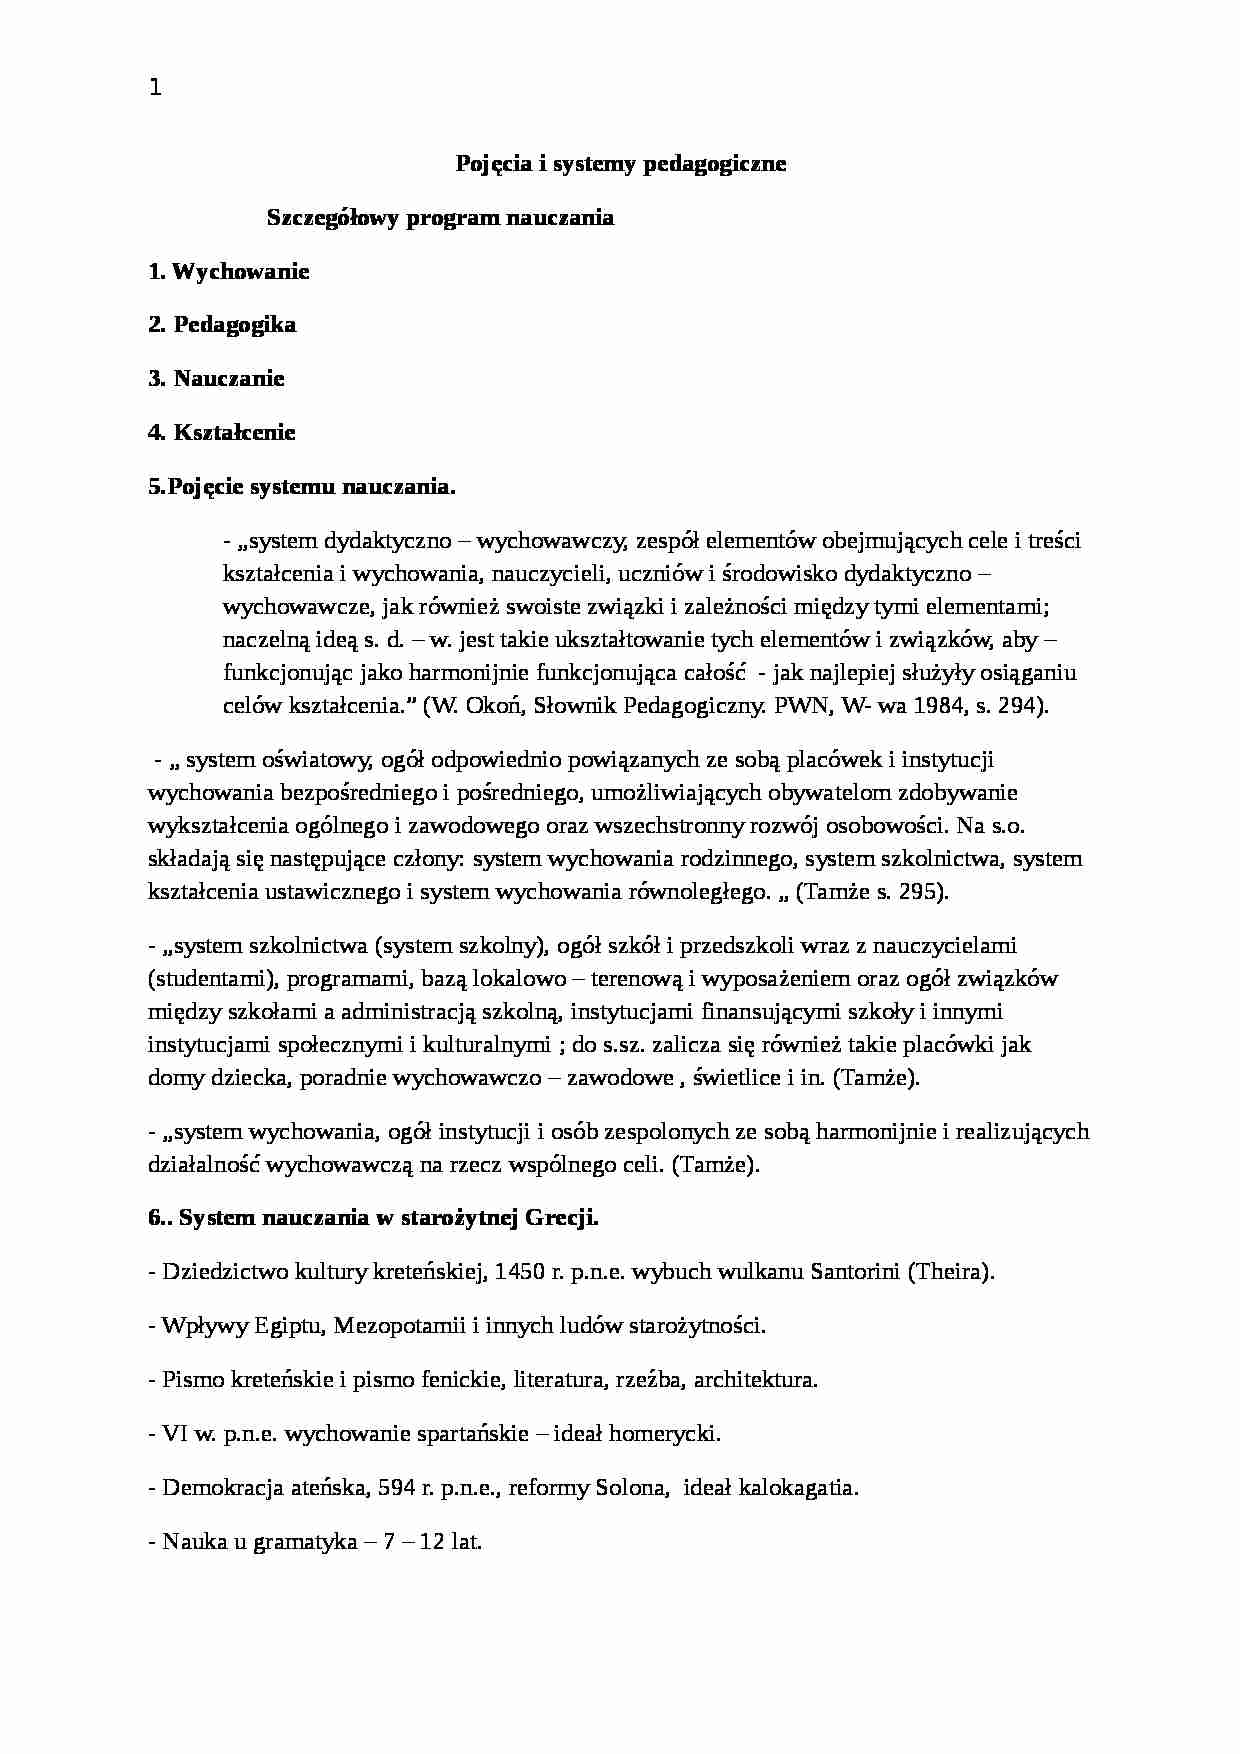 Pojęcia i systemy pedagogiczne - historia - strona 1